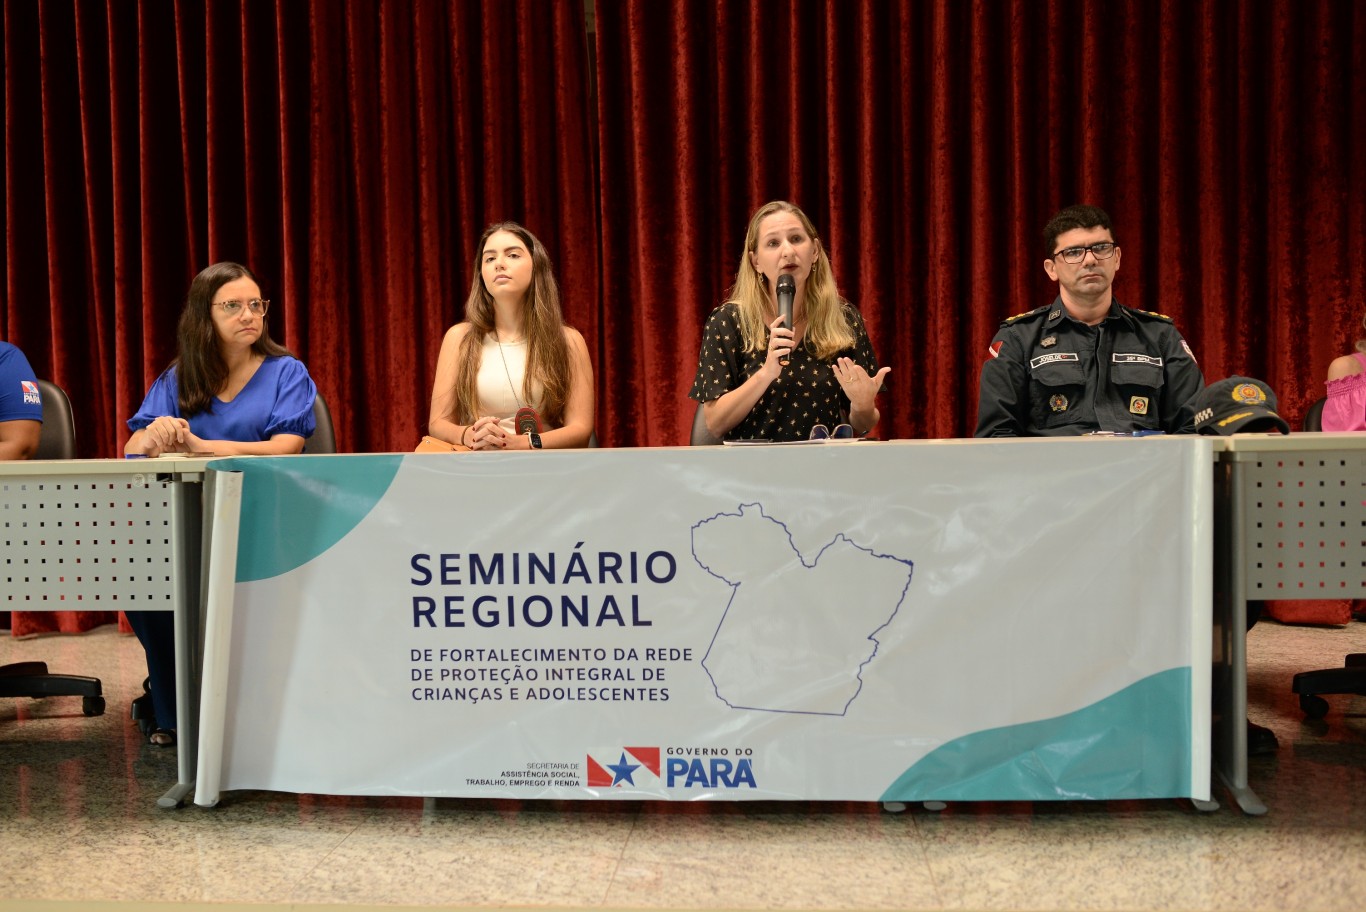 Seminário Regional para fortalecer proteção a crianças e adolescentes foi realizado em Santarém 